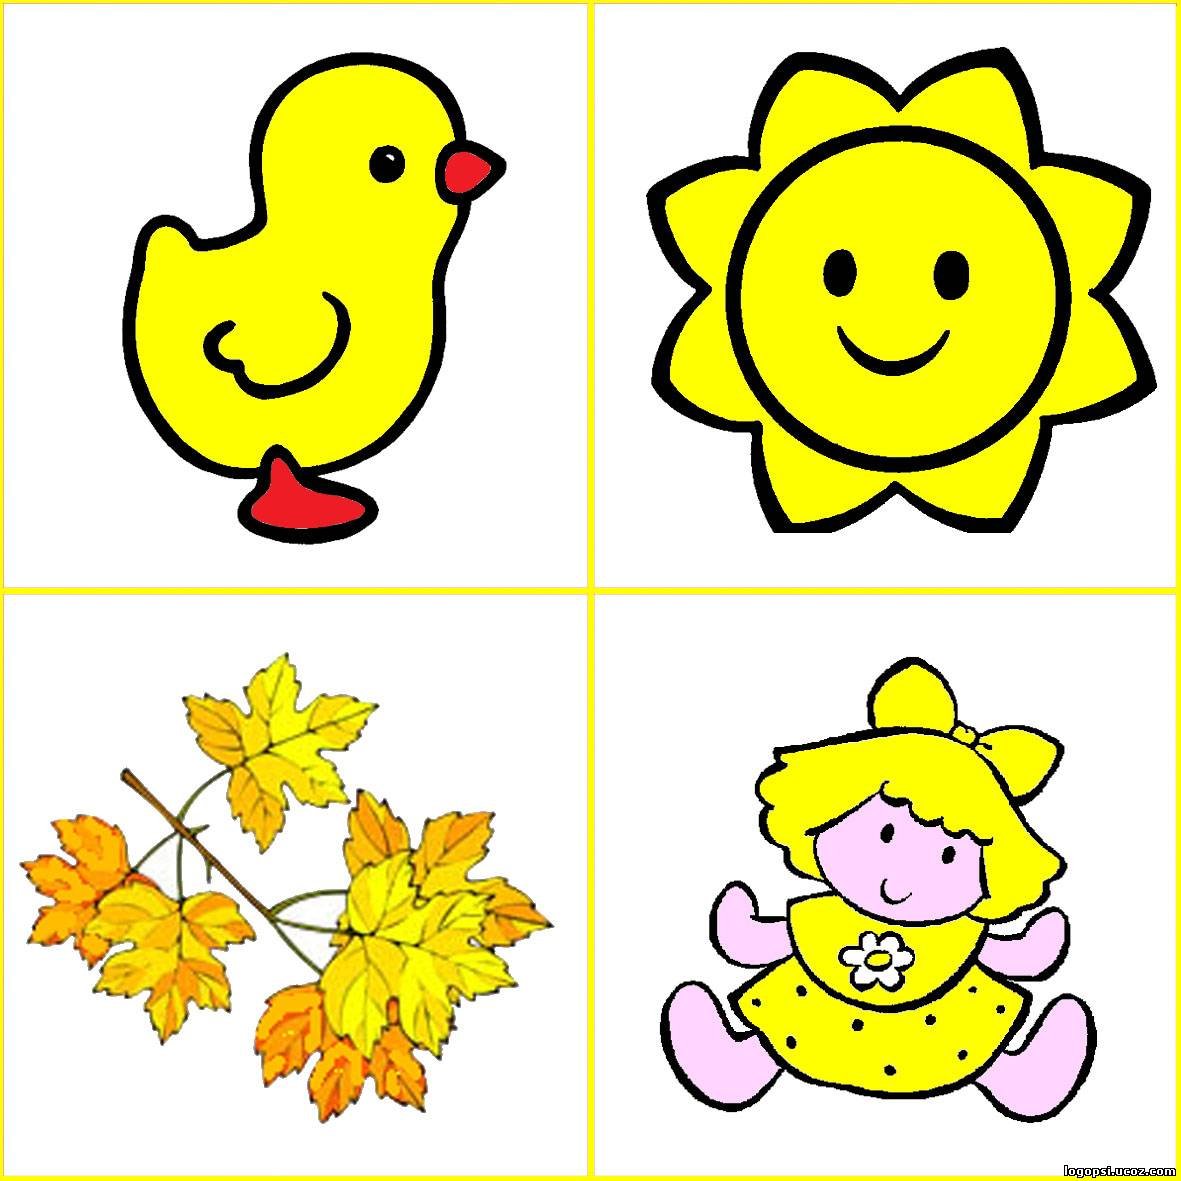 Занятия учим цвета. Карточки цвета для дошкольников. Изучение цветов для детей. Цветовое лото для детей. Изучаем желтый цвет с малышами.